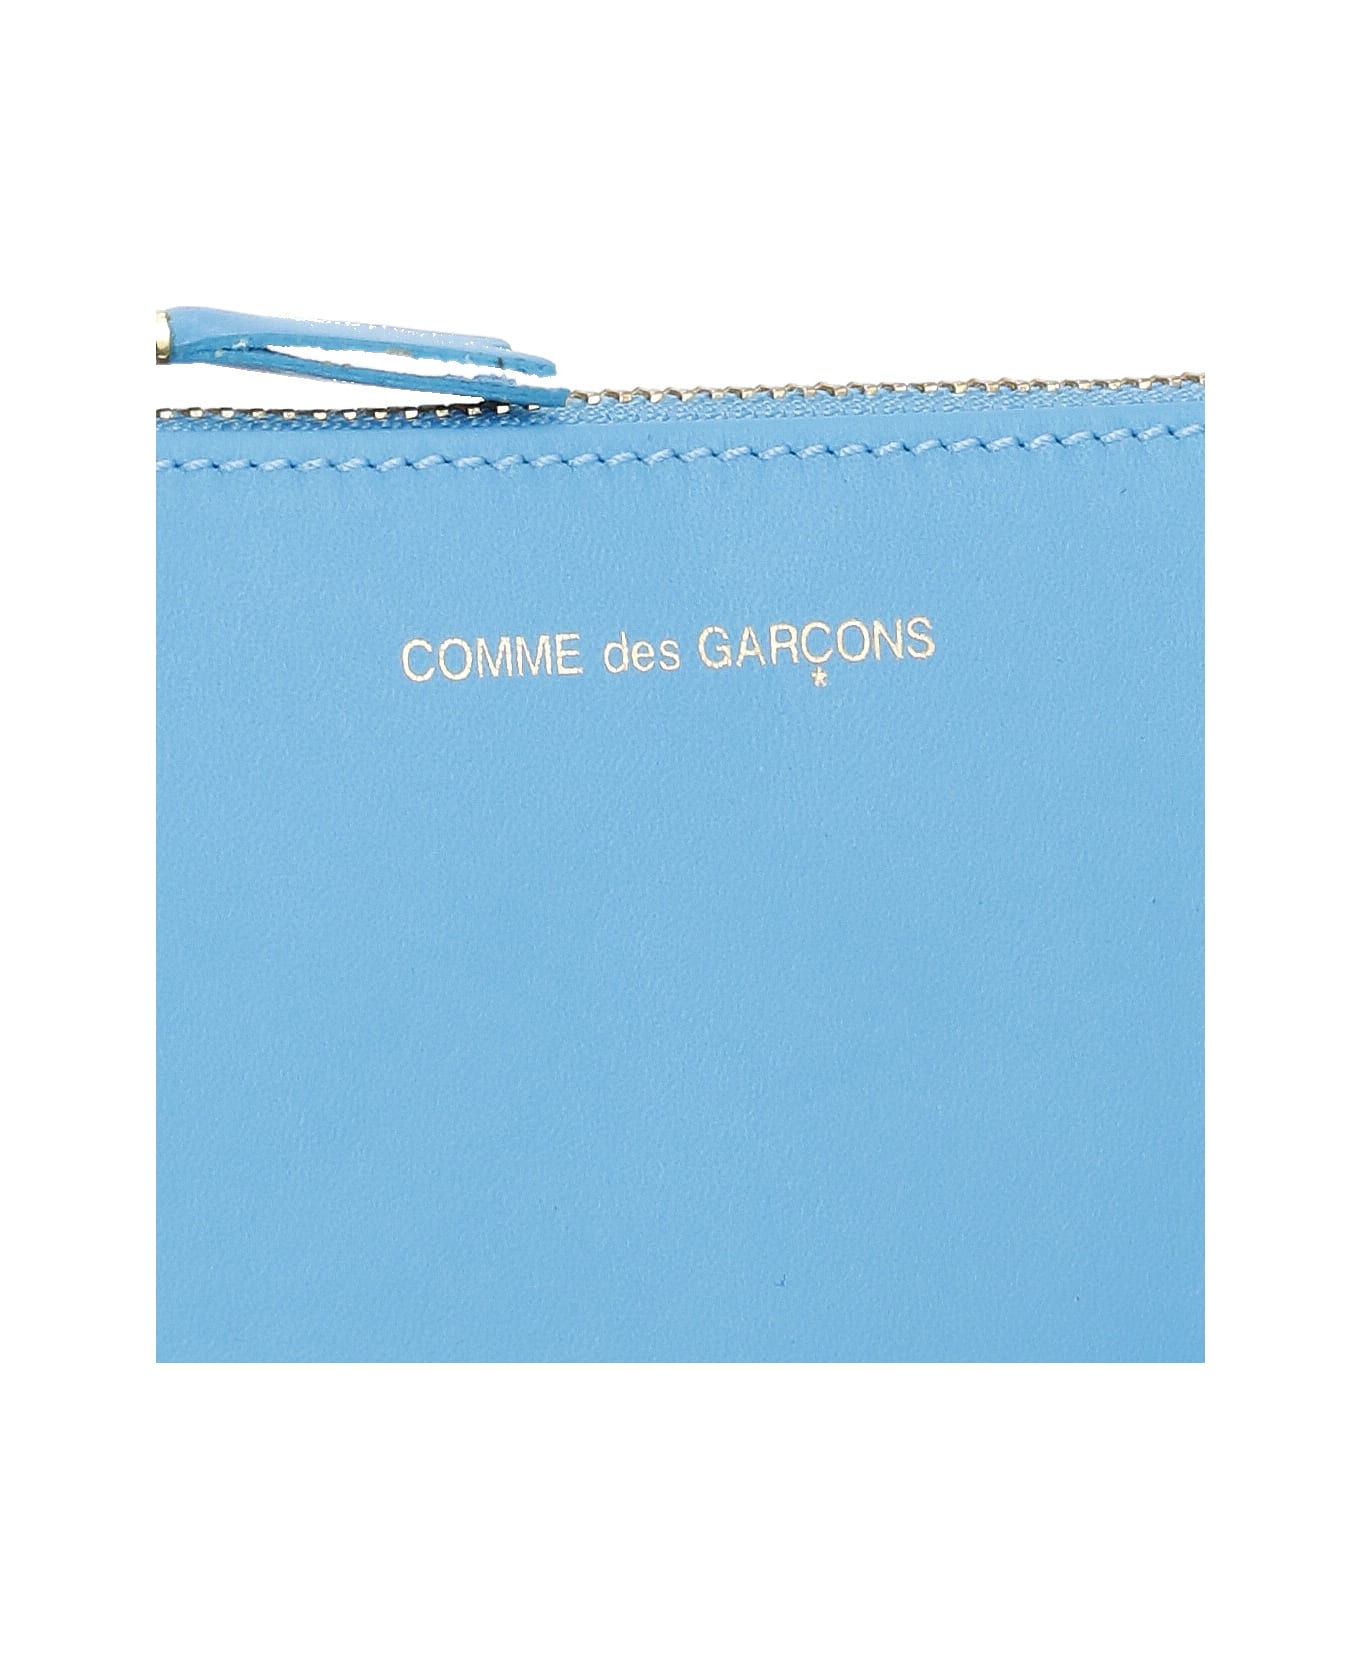 Comme des Garçons Wallet Wallet With Logo - Light Blue 財布